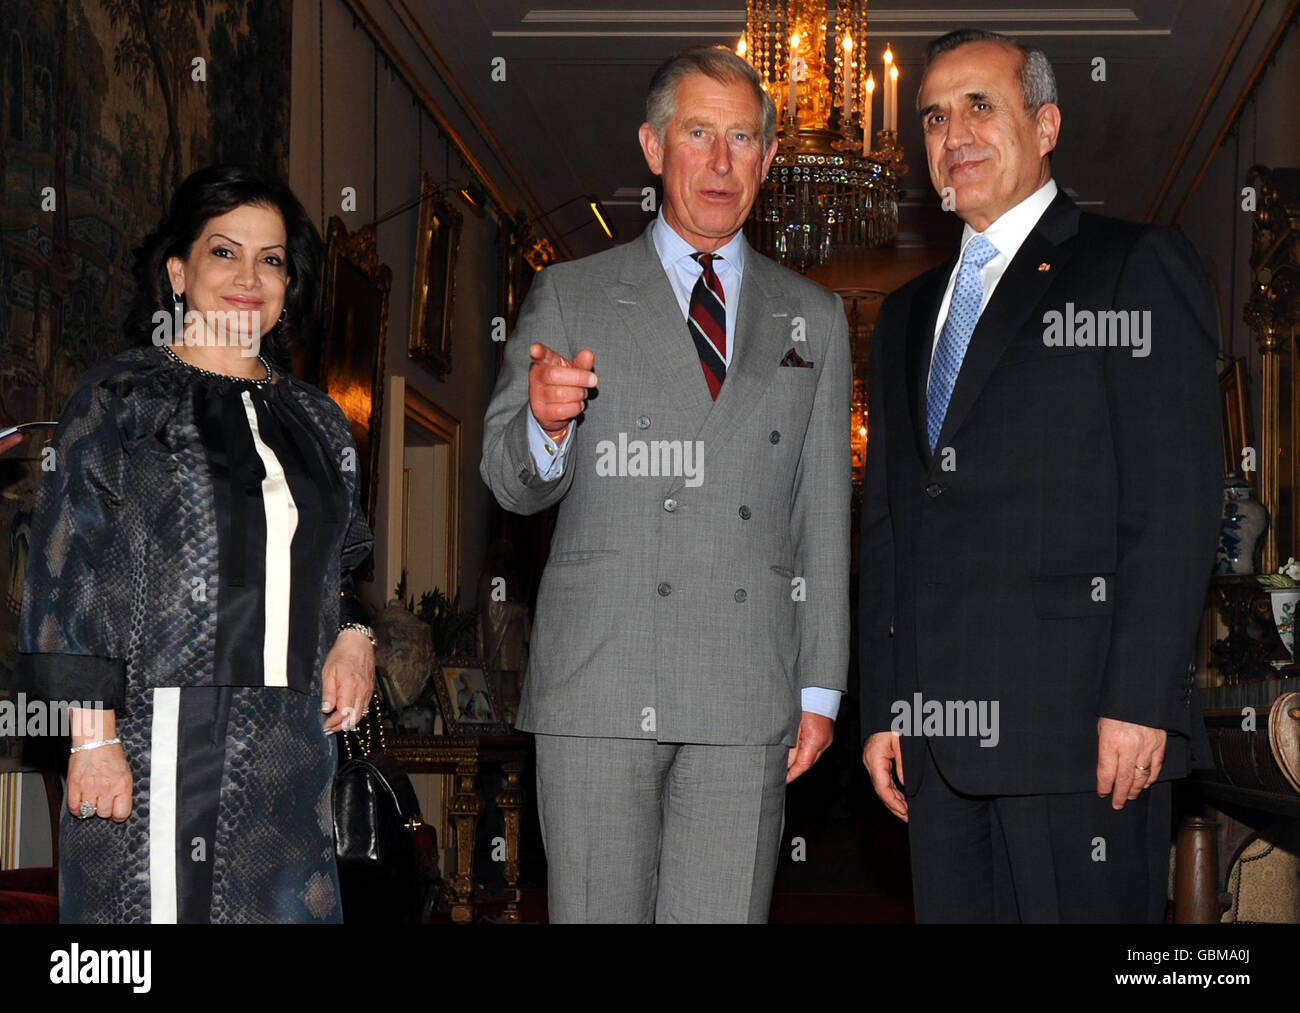 Le Prince de Galles, au centre, reçoit le Président et la première Dame du Liban, S. E. le général Michel et Mme Wafaa Sleiman, à Clarence House, Londres. Banque D'Images